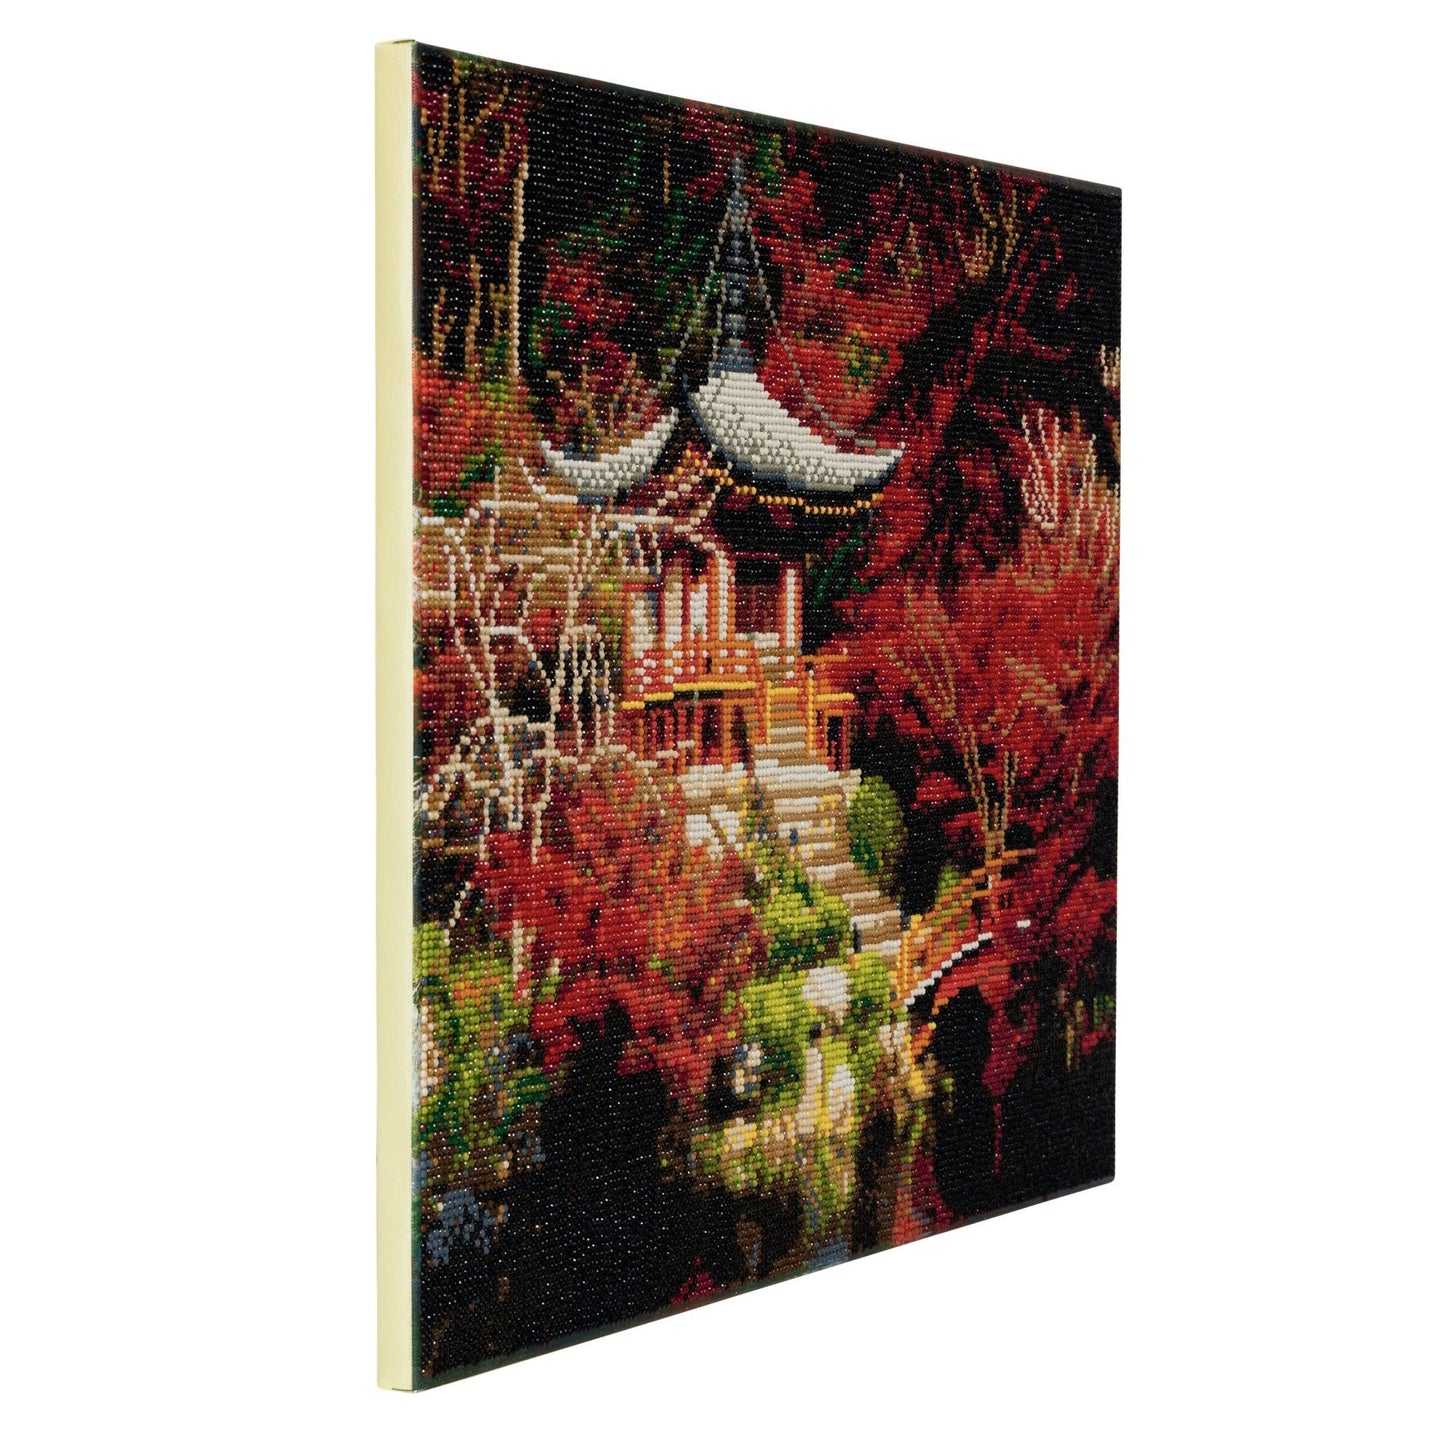 CAK-A50: "Japanese Temple" Framed Crystal Art Kit, 40 x 50cm